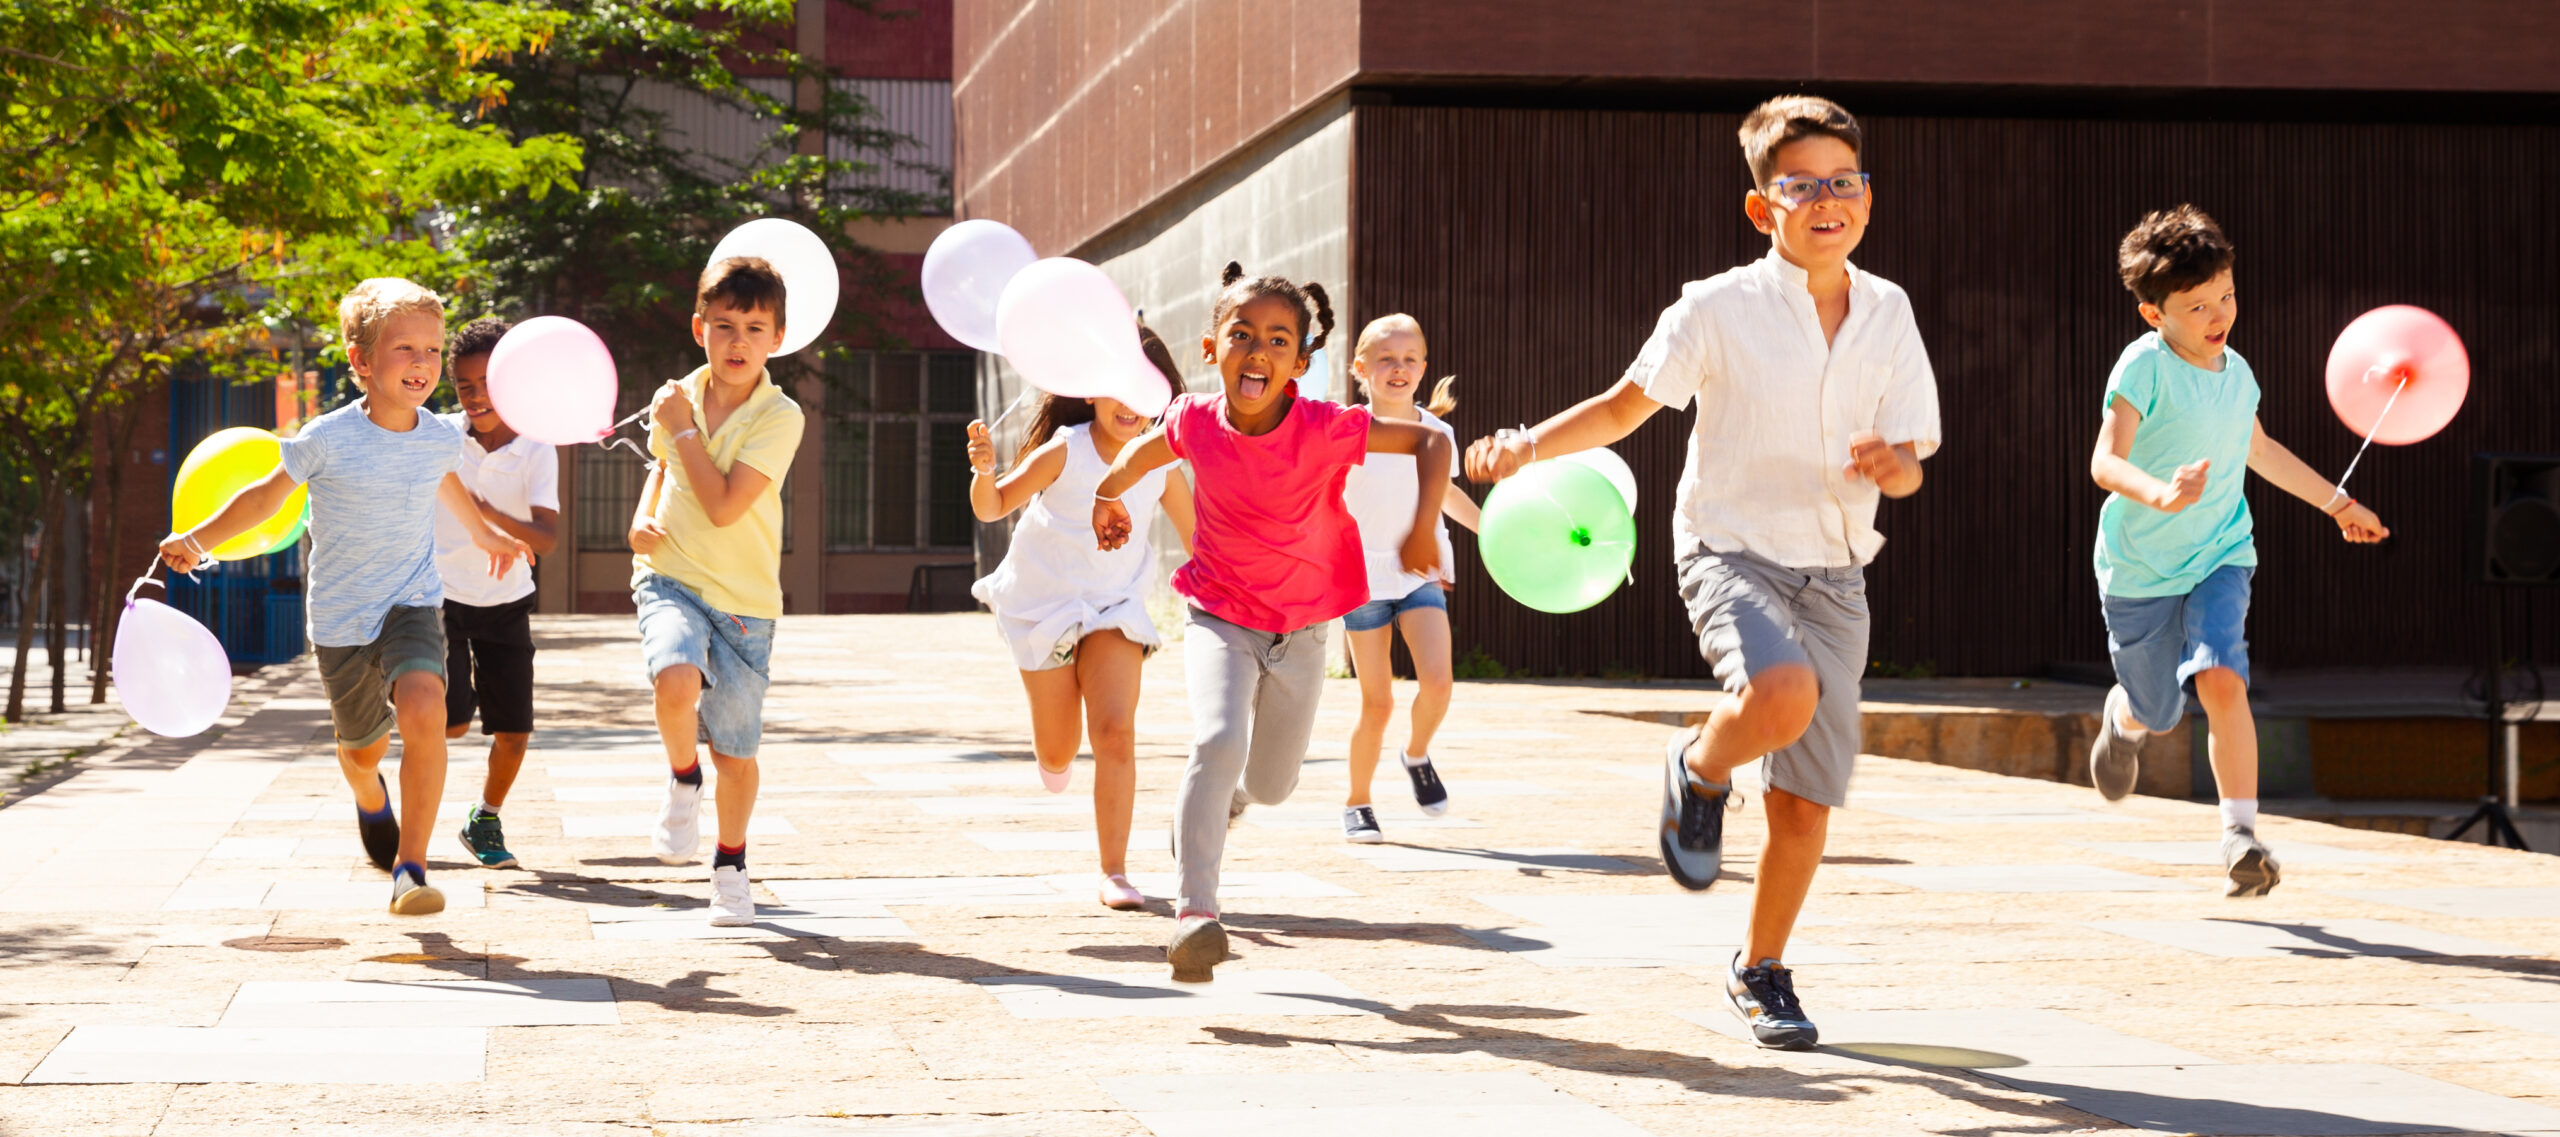 Счастливые дети с воздушными шарами бегают по улице летнего города